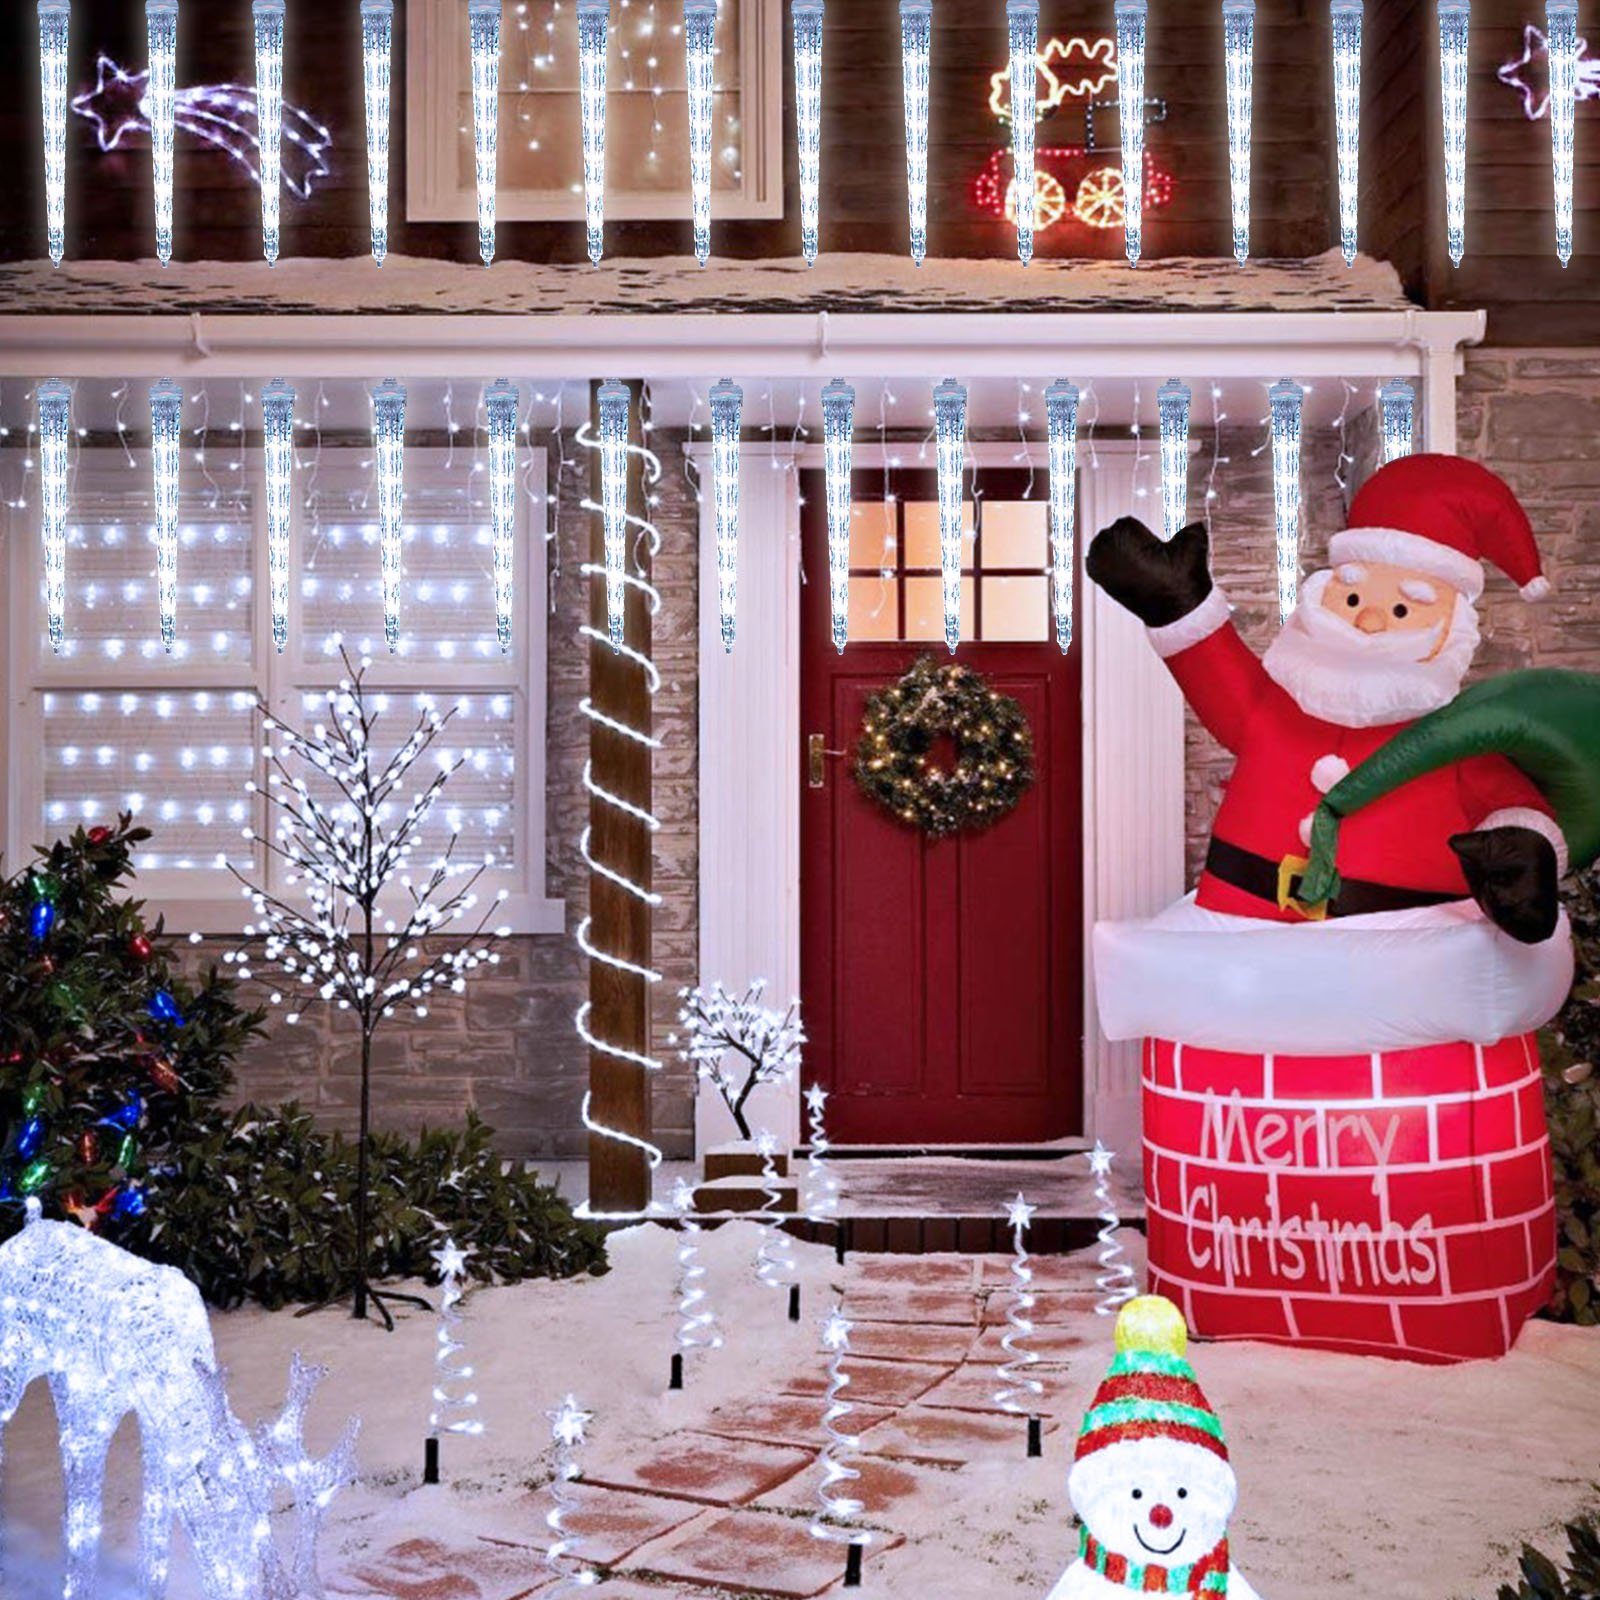 LED-Lichterkette Meteoritenschauer, Sunicol Weiß Außen/Garten/Hochzeit/Party für Weihnachtsbeleuchtung, Lichterregen, Wasserdichte, Schneefalleffekt Eiszapfen,